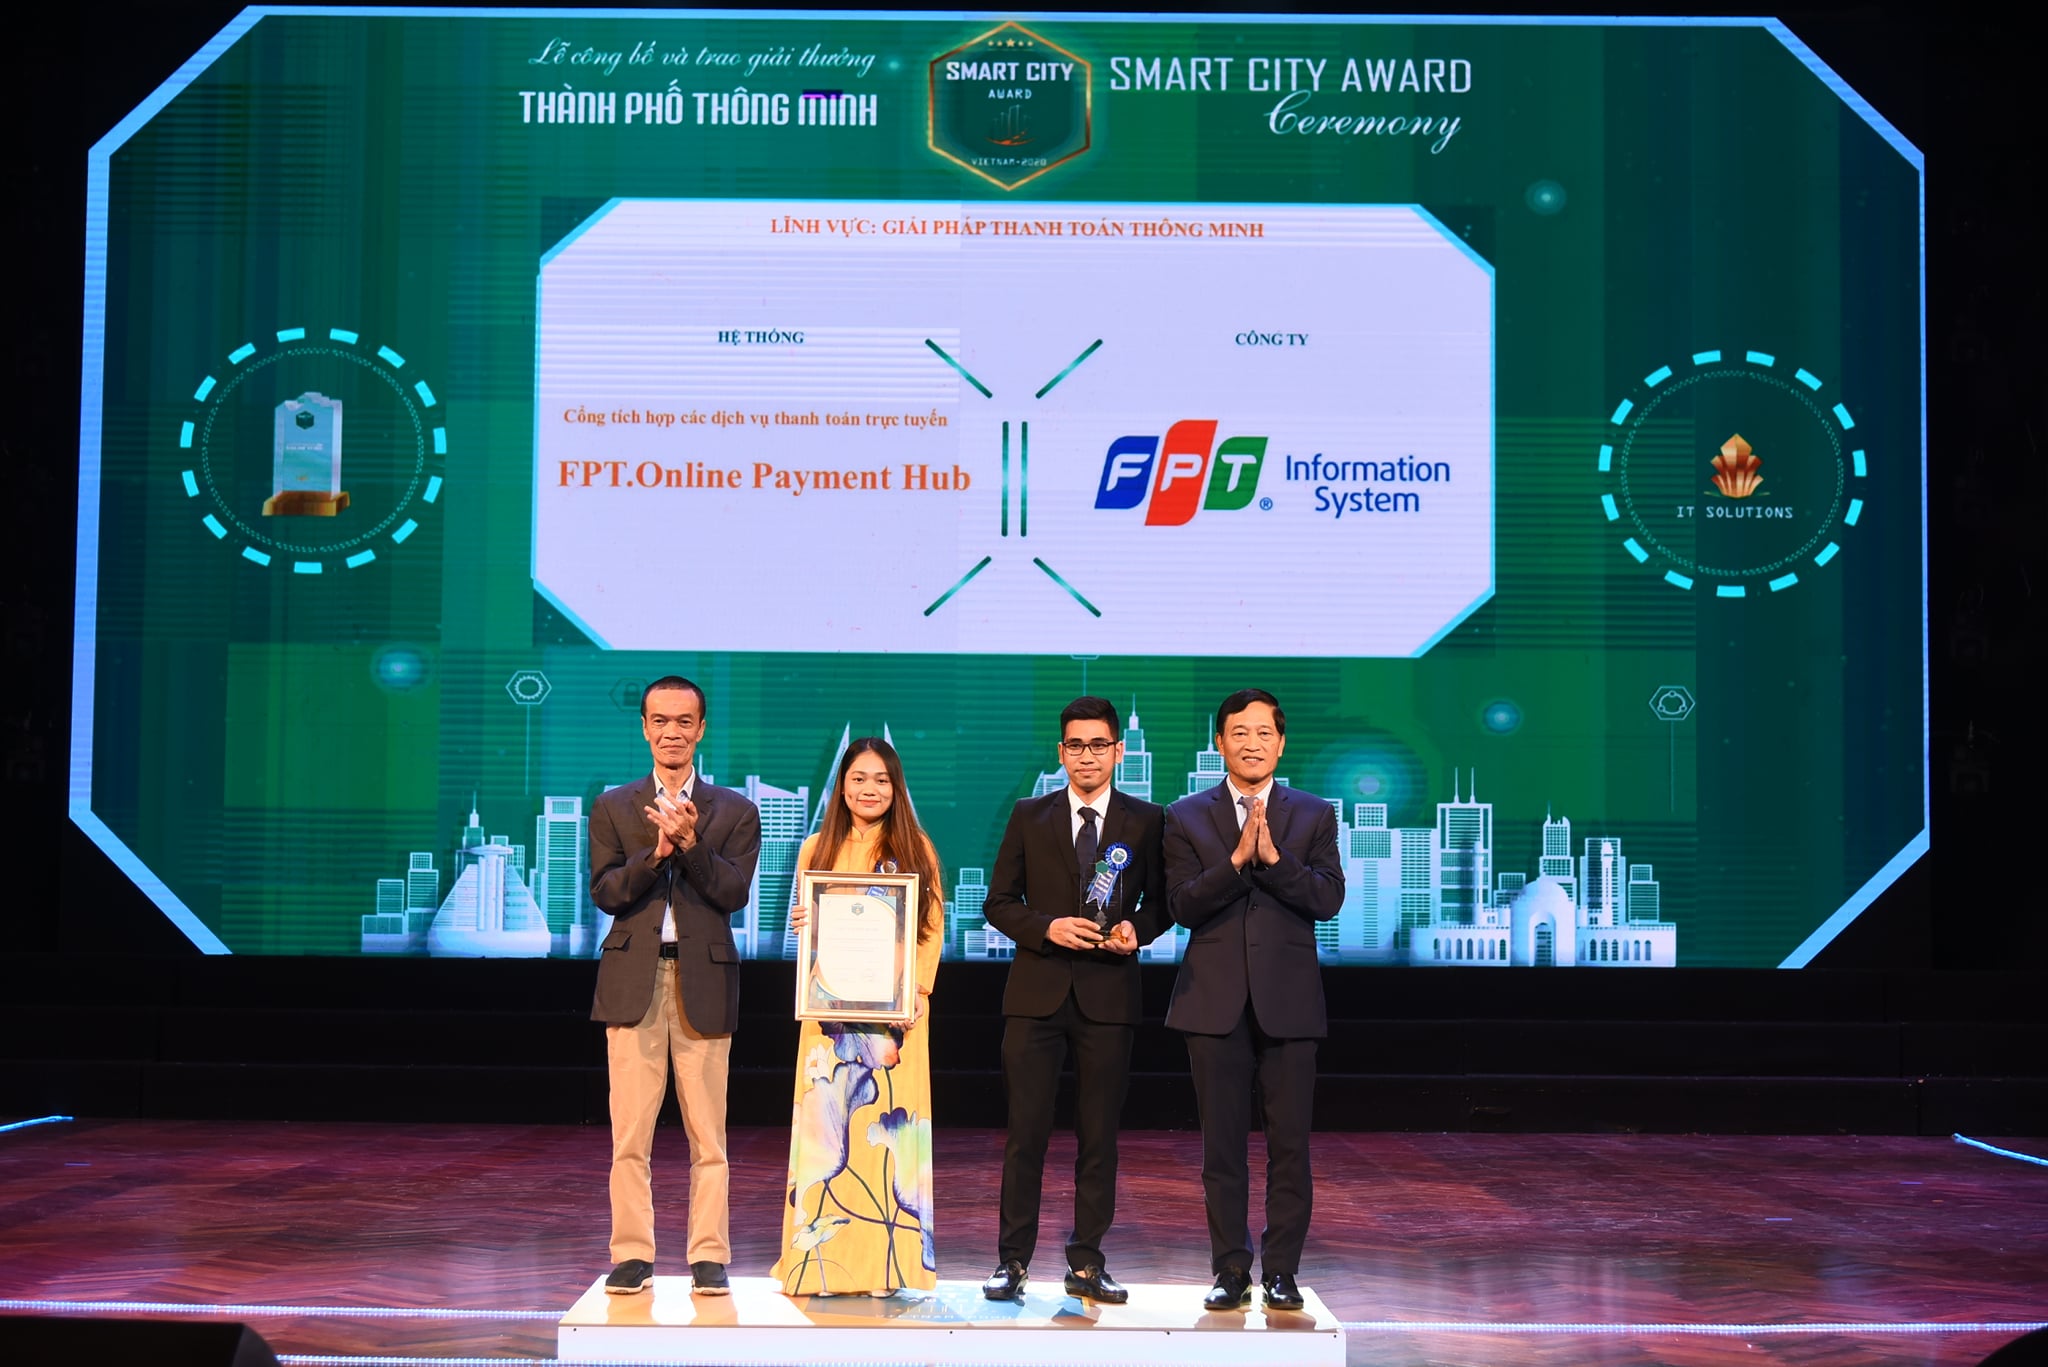 Cổng tích hợp các dịch vụ thanh toán trực tuyến – FPT.Online Payment Hub đạt Giải thưởng Thành phố thông minh Việt Nam 2020